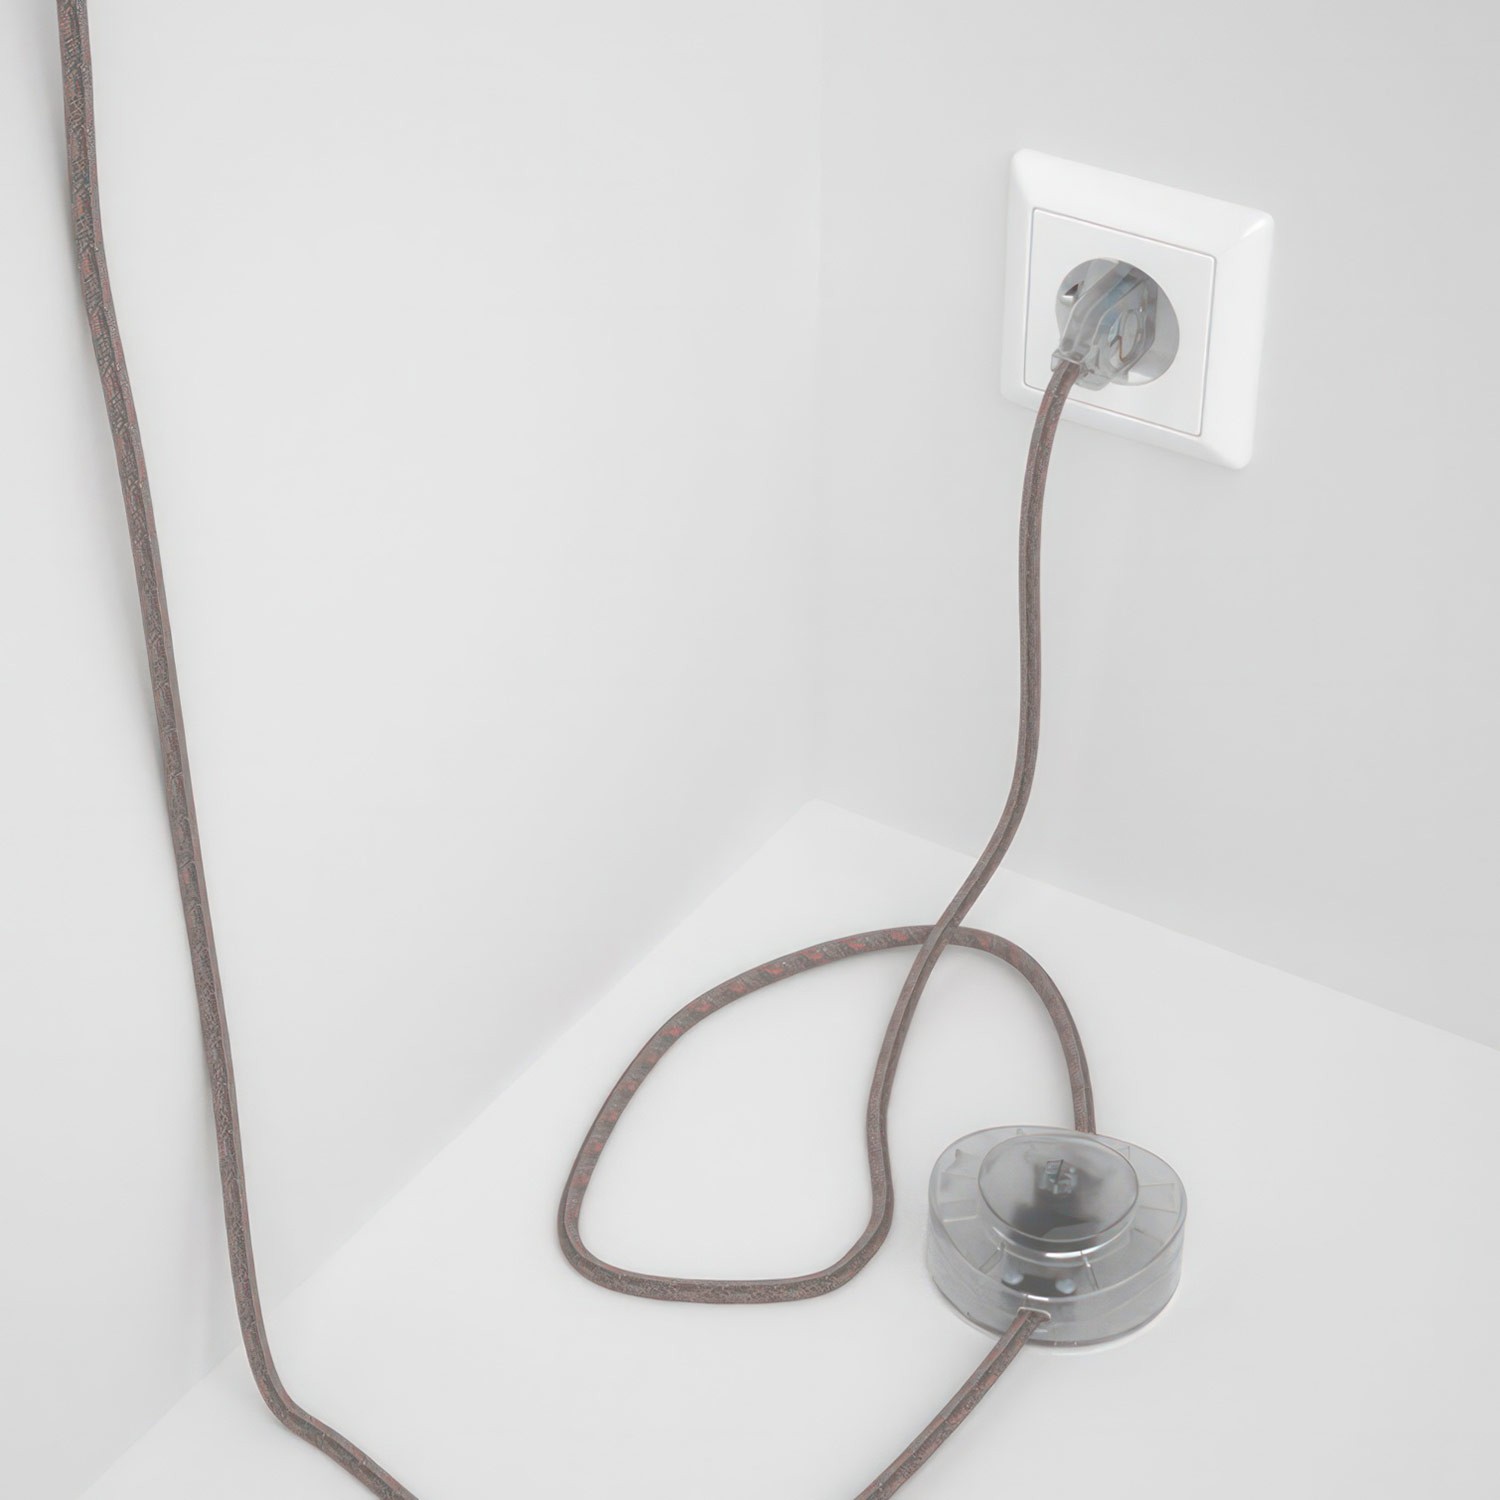 Cableado para lámpara de pie, cable RD51 Stripes Rosa Viejo 3 m. Elige tu el color de la clavija y del interruptor!